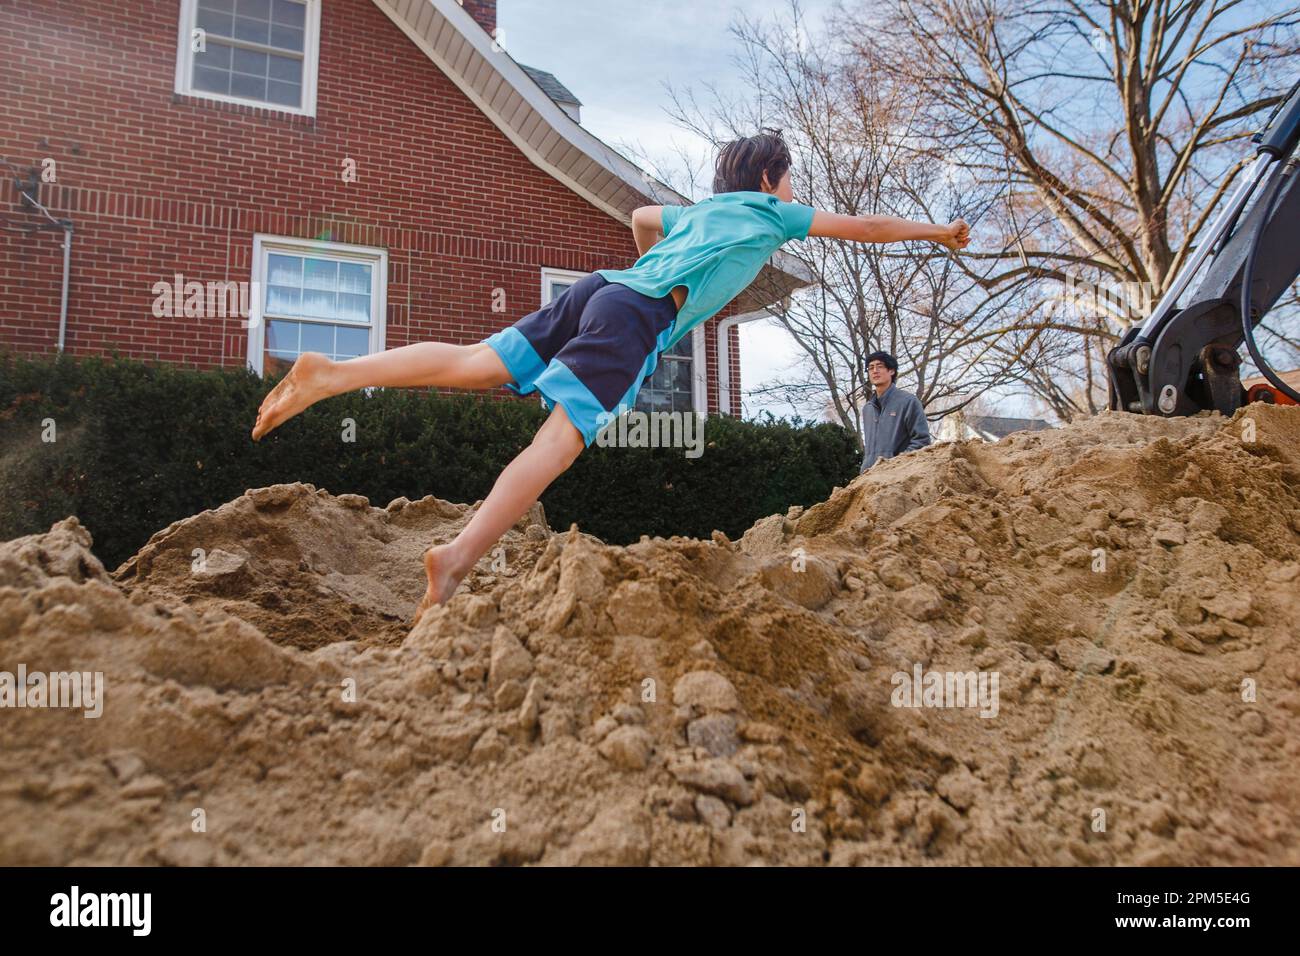 Ein Barfußjunge springt in einen riesigen Sandhaufen, während der Vater zusieht Stockfoto